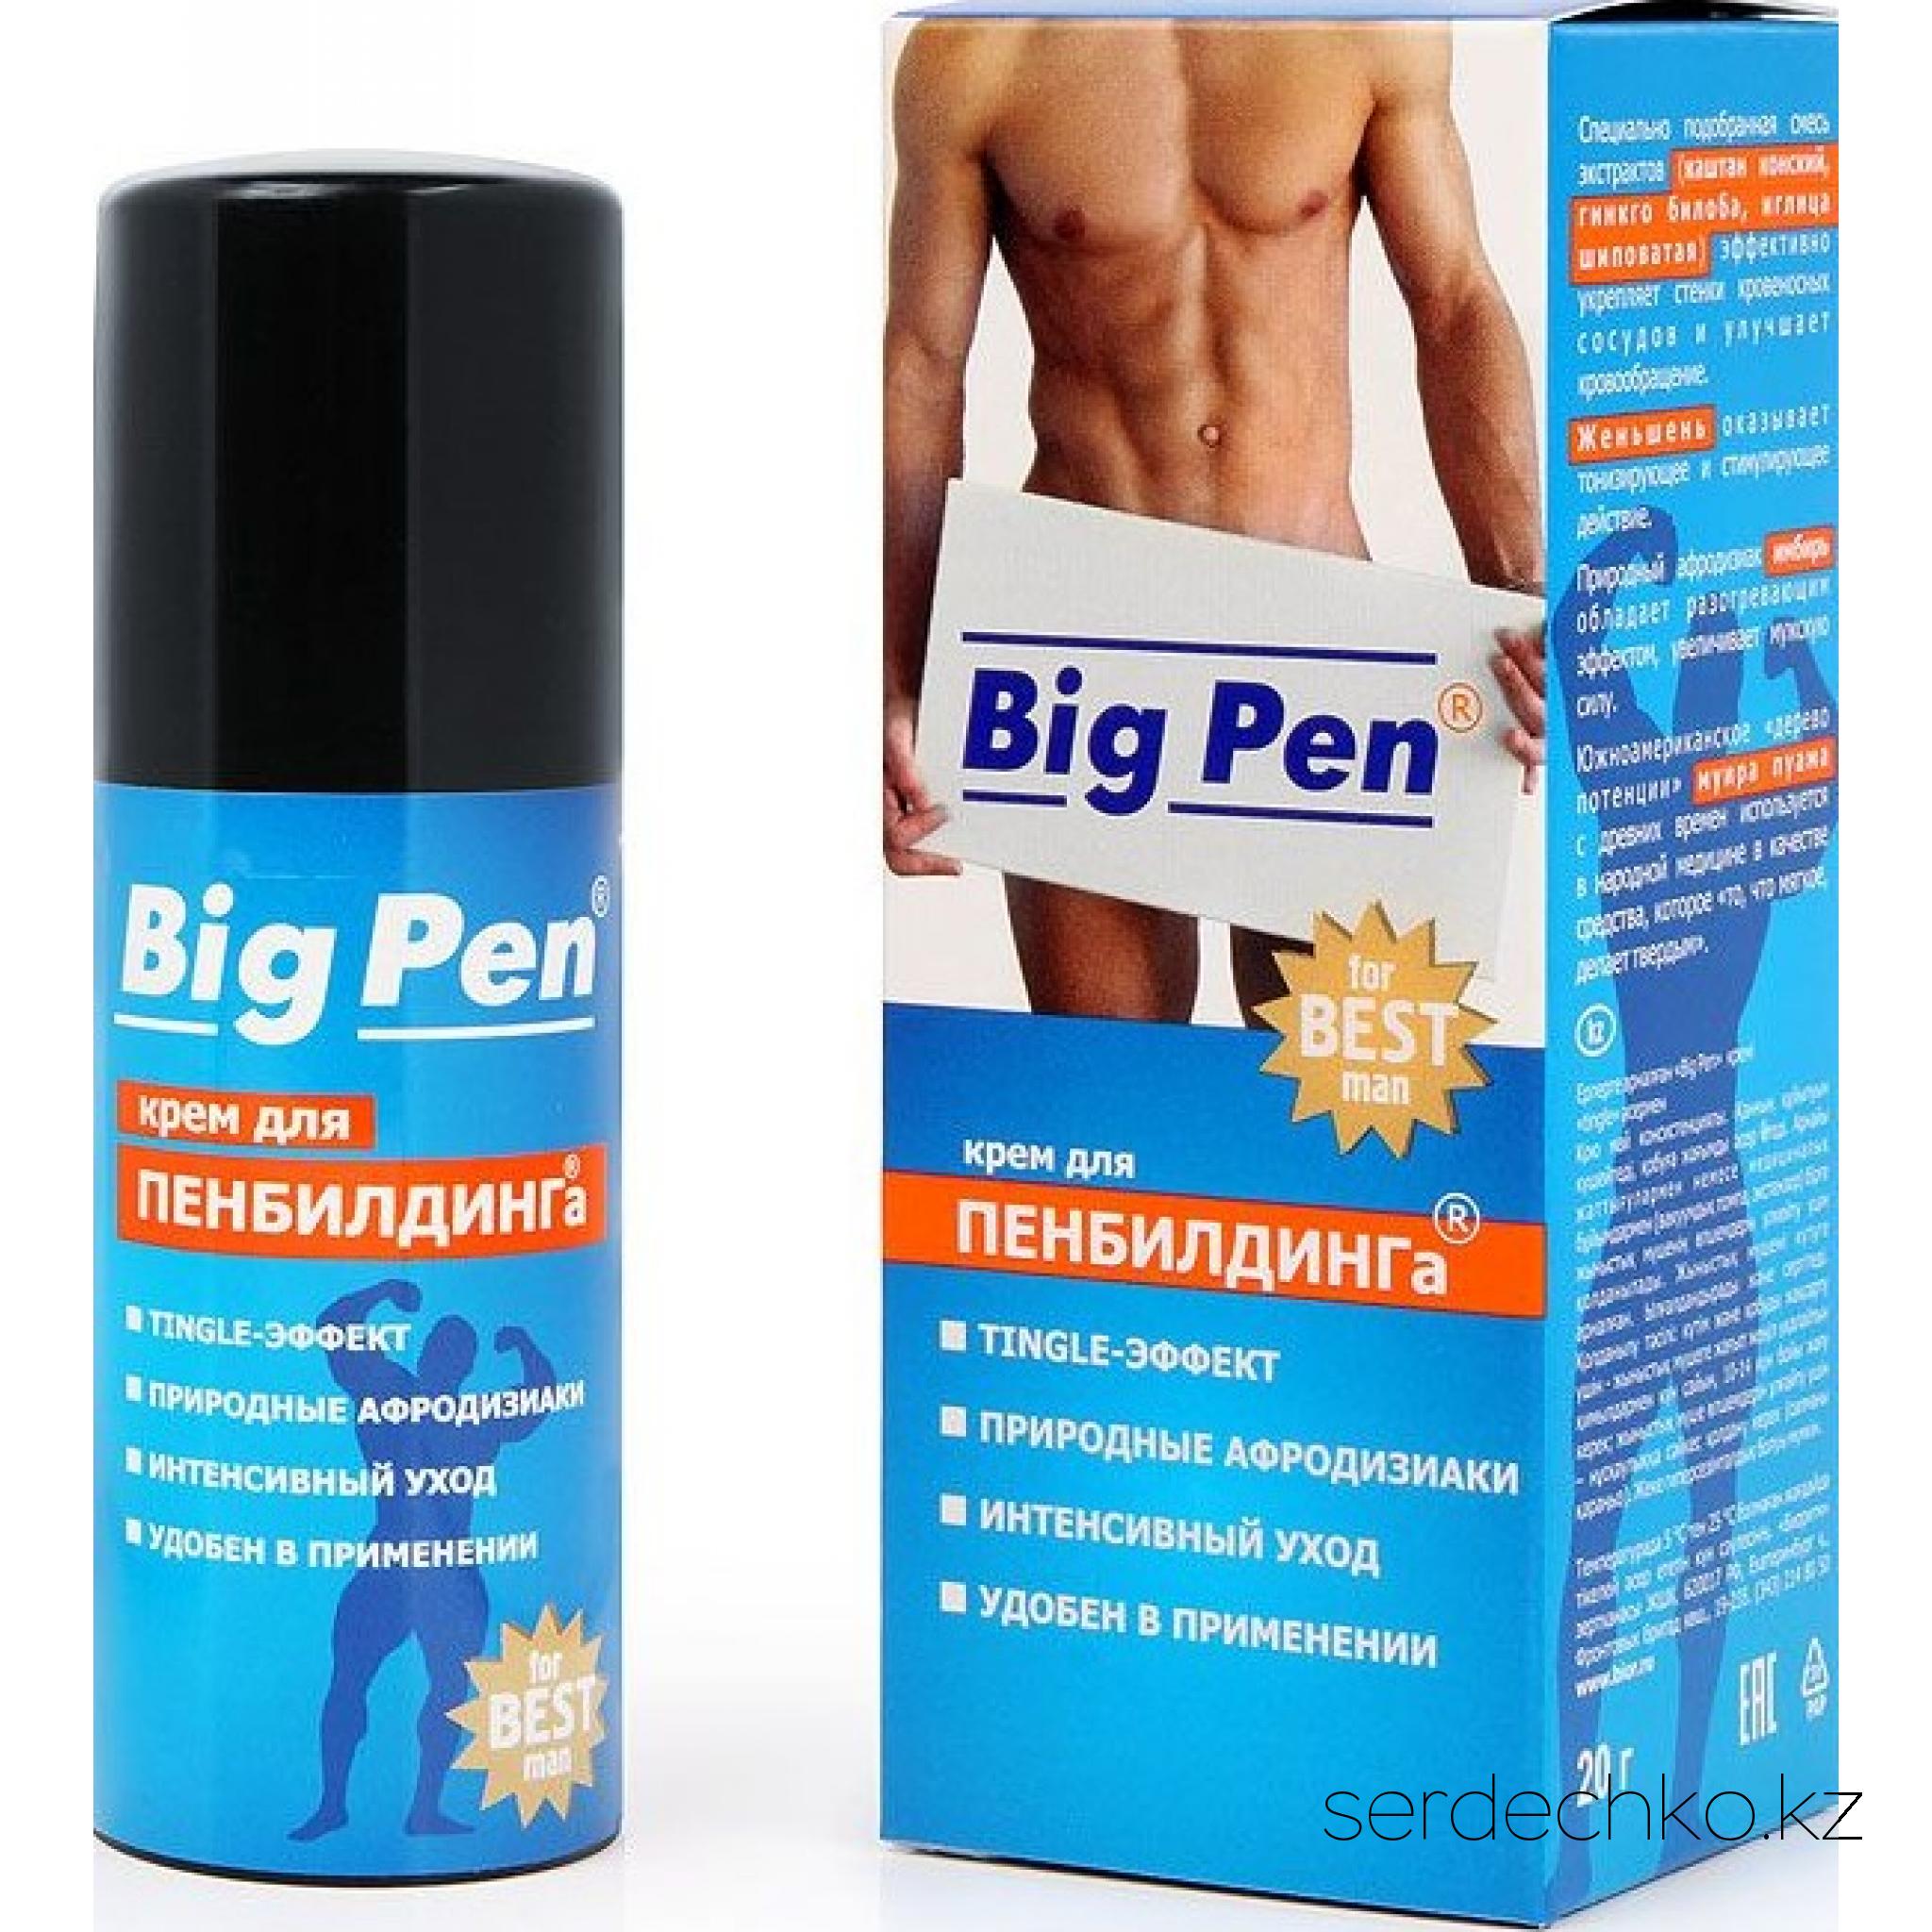 Big Pen - крем для увеличения пениса 20 г, 
	Крем "Big Pen" применяется в методике пенбилдинга- постепенного механического растяжения тканей пениса мужчины ьдо желаемого размера. Именно для максимального комфорта этой процедуры и был разработан крем "Big Pen" с особой структурой, которая сочетает длительное скольжение масла и приятную упругость крема. Воздействие активных компонентов, входящих в состав крема поможет Вам достичь желаемого результата максимально быстро и в домашних условиях.

	- Специально подобранная смесь экстрактов(каштан конский, гинго билоба, иглица шиповатая) эффективно укрепляет стенки кровеносных сосудов и улучшает кровообращение делает соединительные ткани эластичными и легко растяжимыми.
	- Женьшень оказывает тонизируещее и стимулирующее действие.
	- Имбирь - природный афродизиак, вызывает и усиливает половое влечение.
	- Муира пуама используется для улучшения эрекции.

	Подходит для применения совместно с вакуумными помпами, экстензорами, или при выполнении специальных упражнений.

	Важно: увеличение пениса, как в длину, так и в диаметре, требует определенного времени и терпения. 

	Ежедневно массирующими движениями наносите крем на ствол и головку полового члена до полного впитывания. После чего приступайте к специальным упражнениям по увеличению пениса (пенбилдингу). Длительность занятий пенбилдингом в среднем составляет 15-20 минут в день. 

	Подробное описание упражнений вы найдёте в инструкции, прилагаемой к крему Big Pen (см. в коробке).

	Возможна индивидуальная гиперчувствительность.
